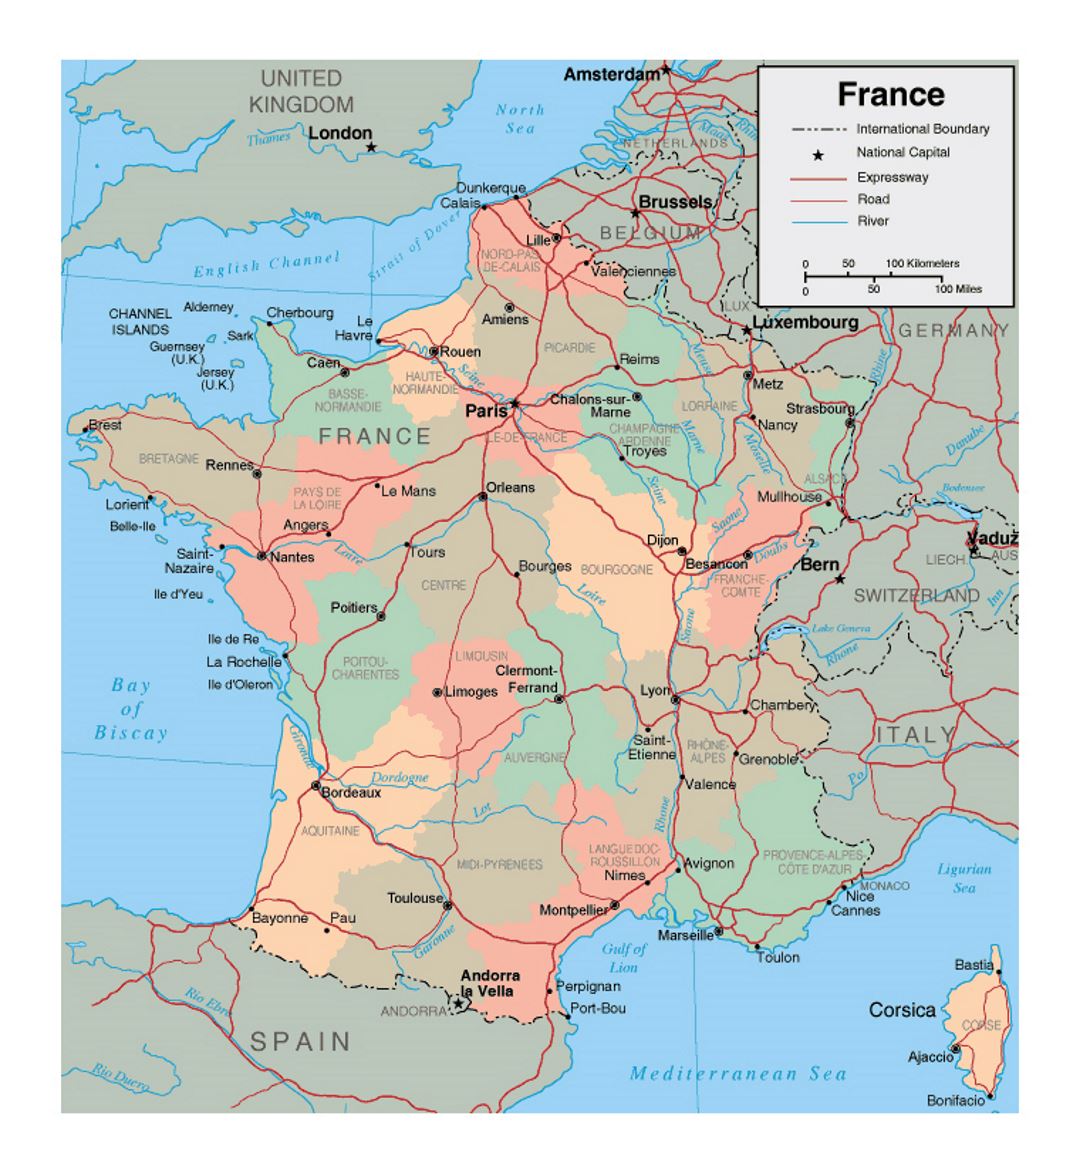 Mapa político y administrativo de Francia con las principales ciudades